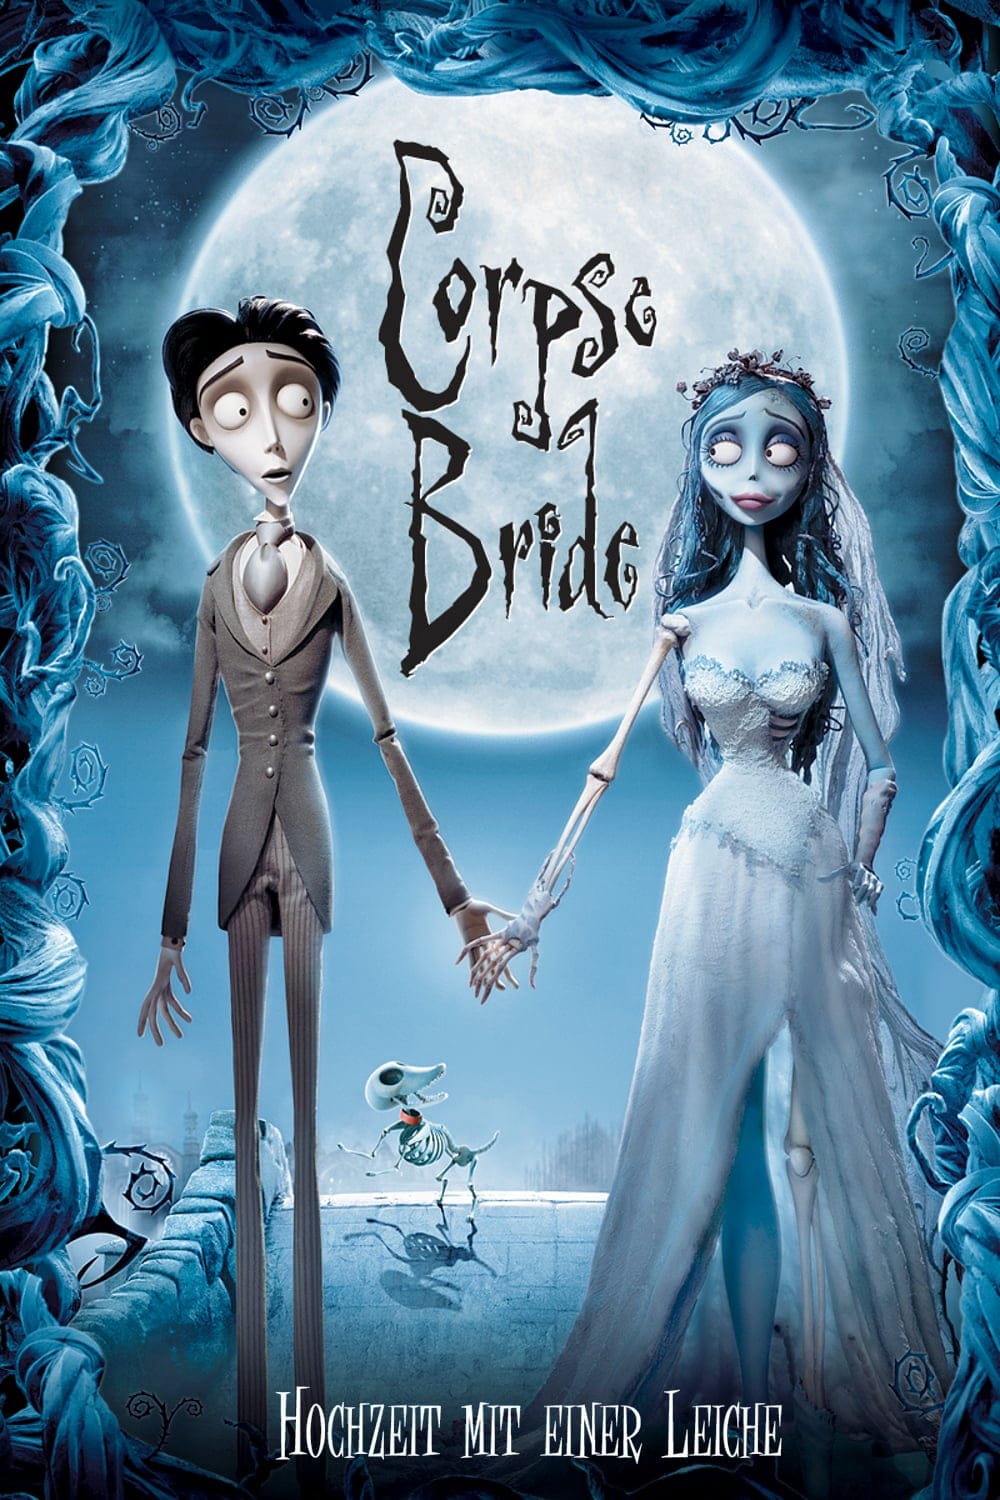 Plakat von "Corpse Bride - Hochzeit mit einer Leiche"